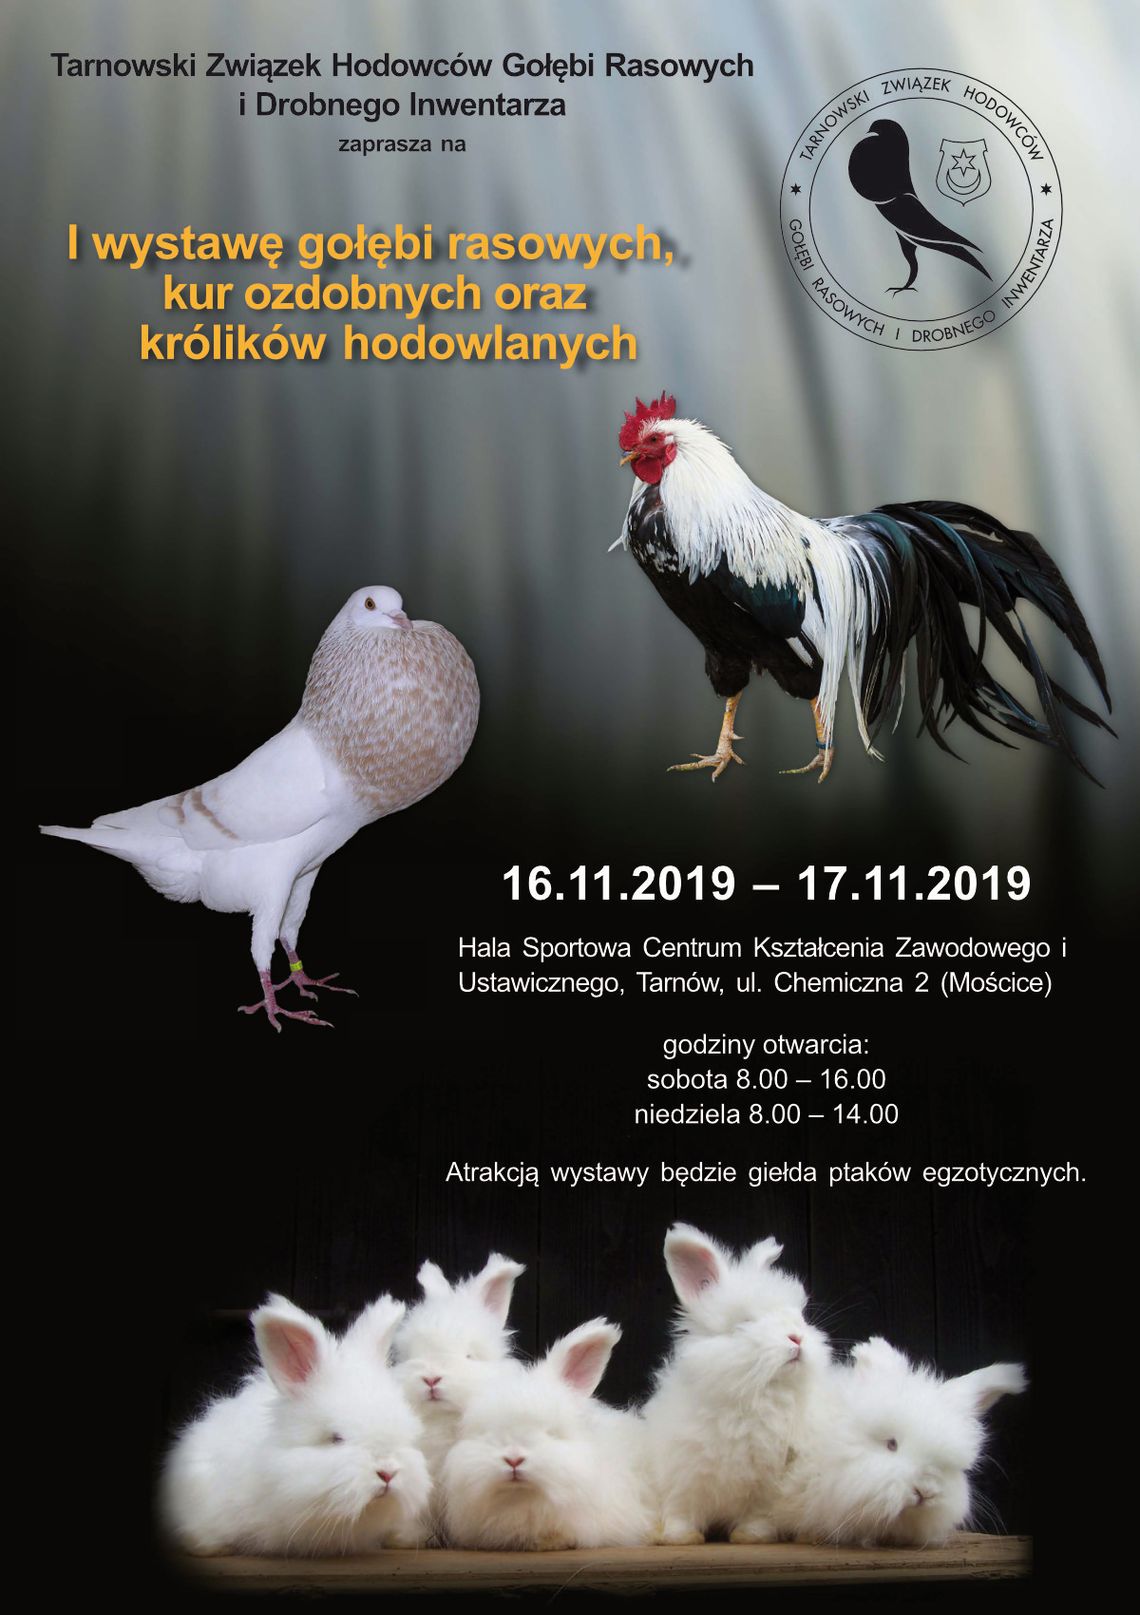 I Wystawa gołębi rasowych, kur ozdobnych i królików hodowlanych w Tarnowie!